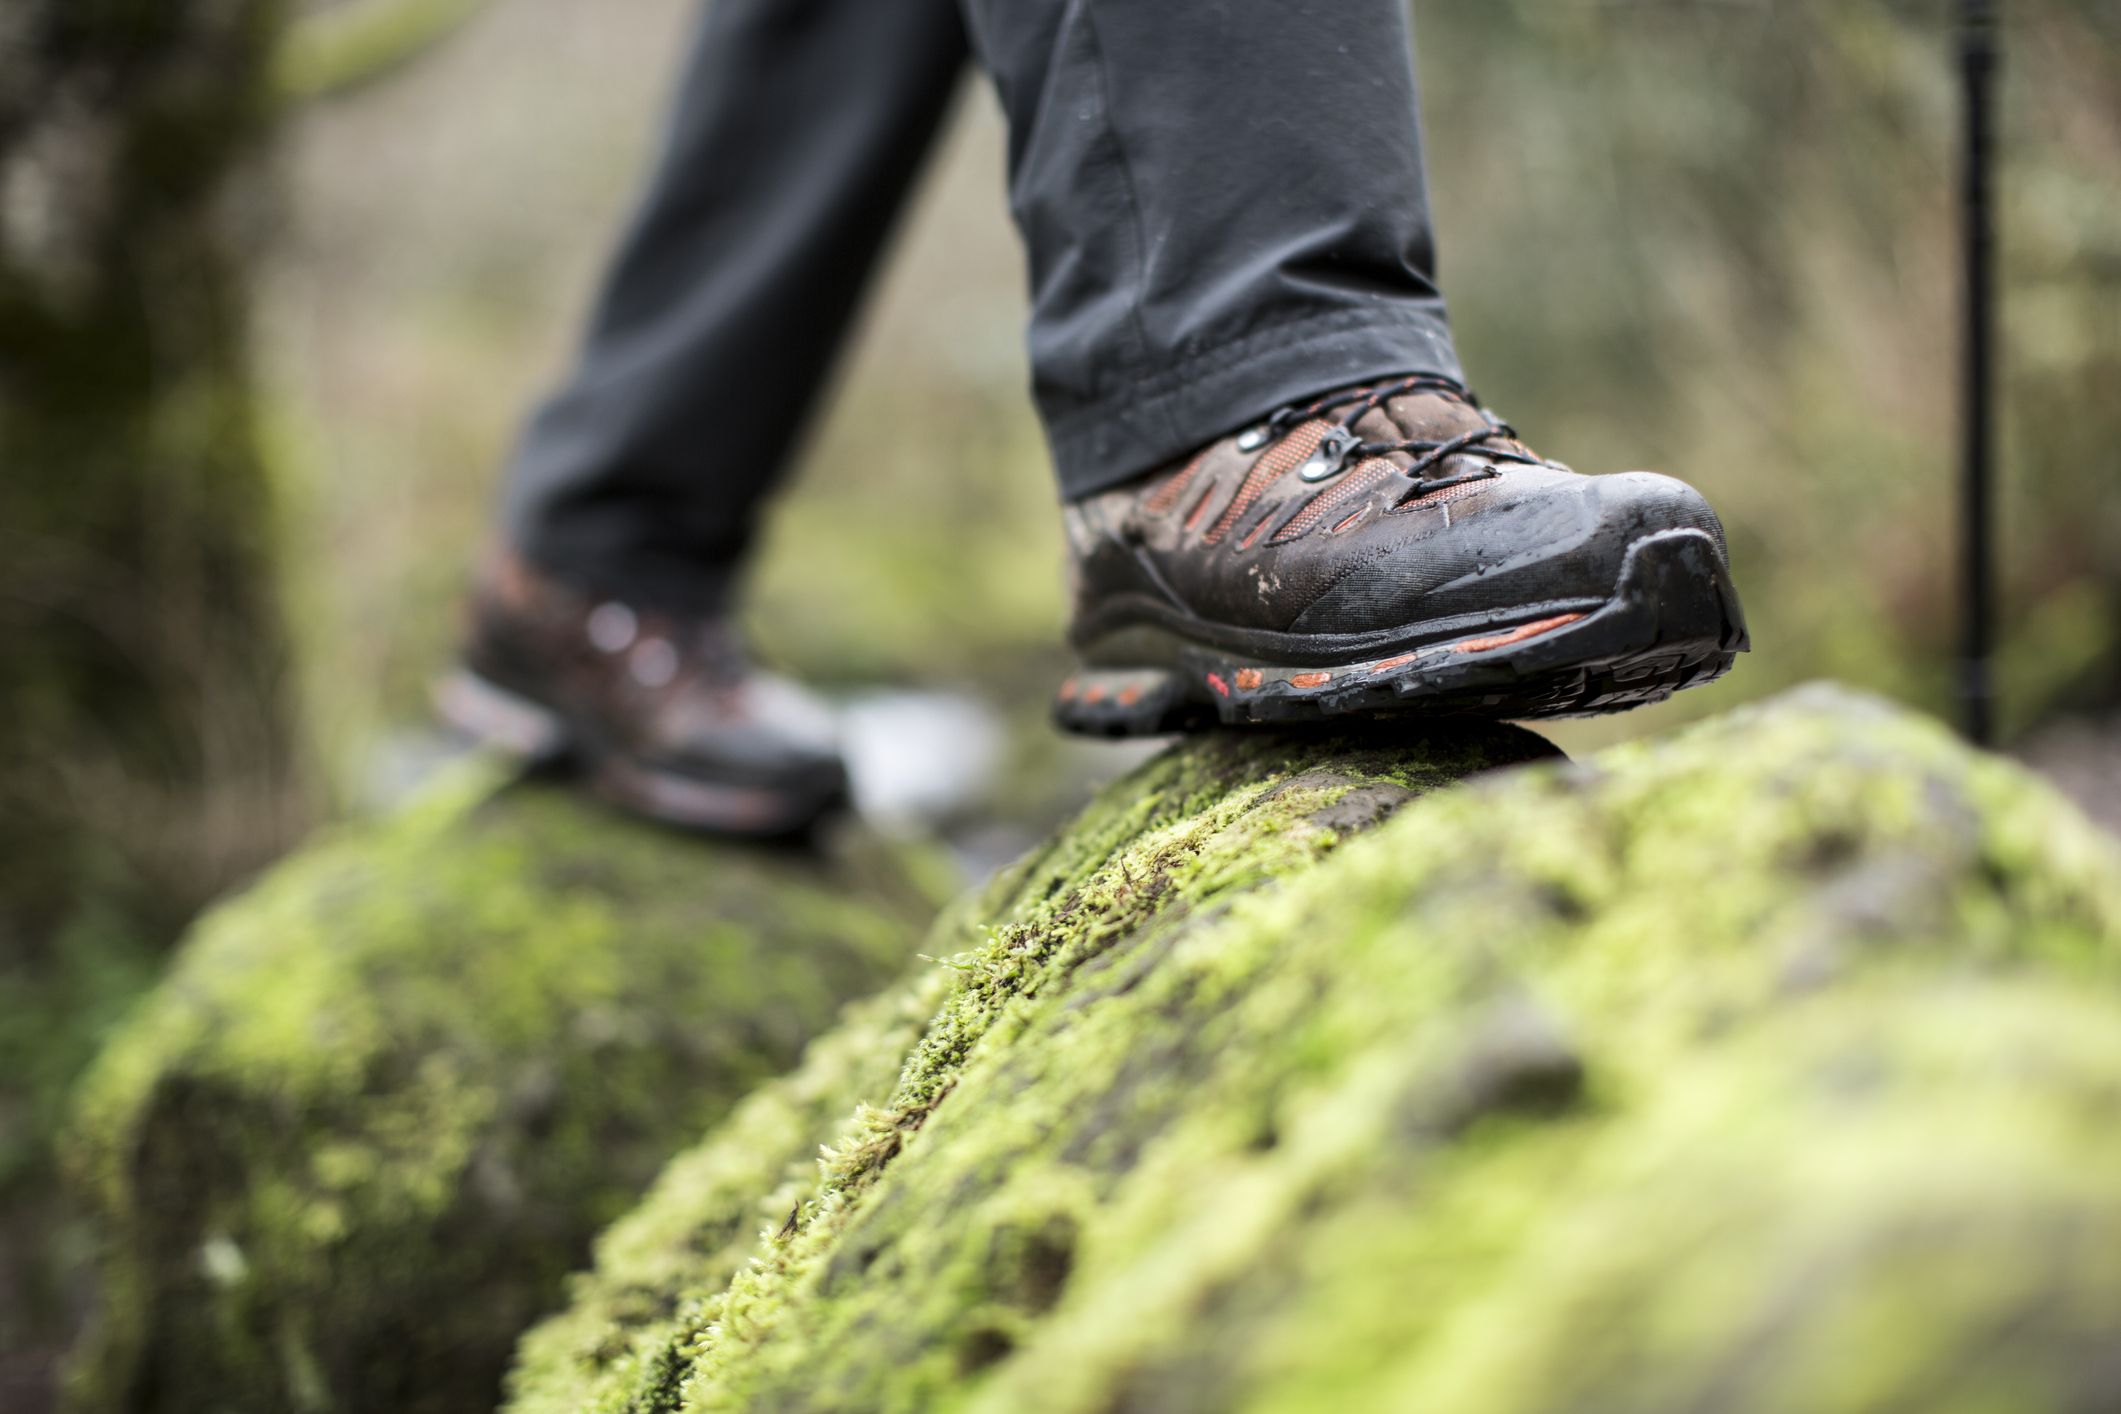 Zapatillas de trekking para hombre ligeras y cómodas